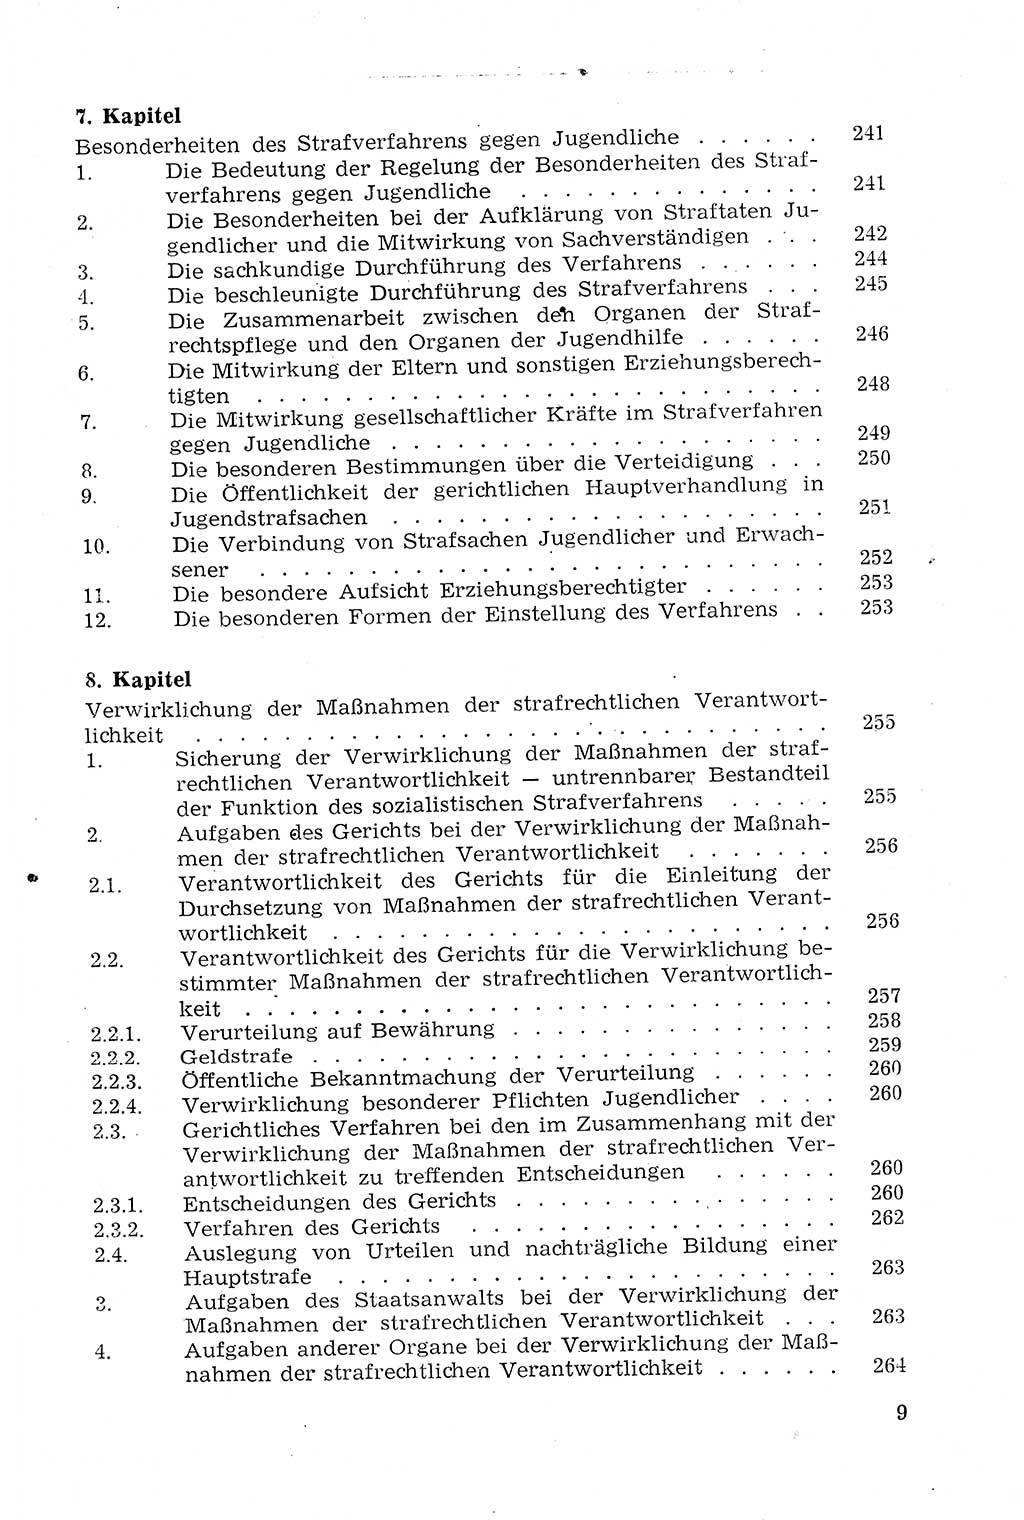 Strafprozeßrecht der DDR (Deutsche Demokratische Republik), Lehrmaterial 1969, Seite 9 (Strafprozeßr. DDR Lehrmat. 1969, S. 9)